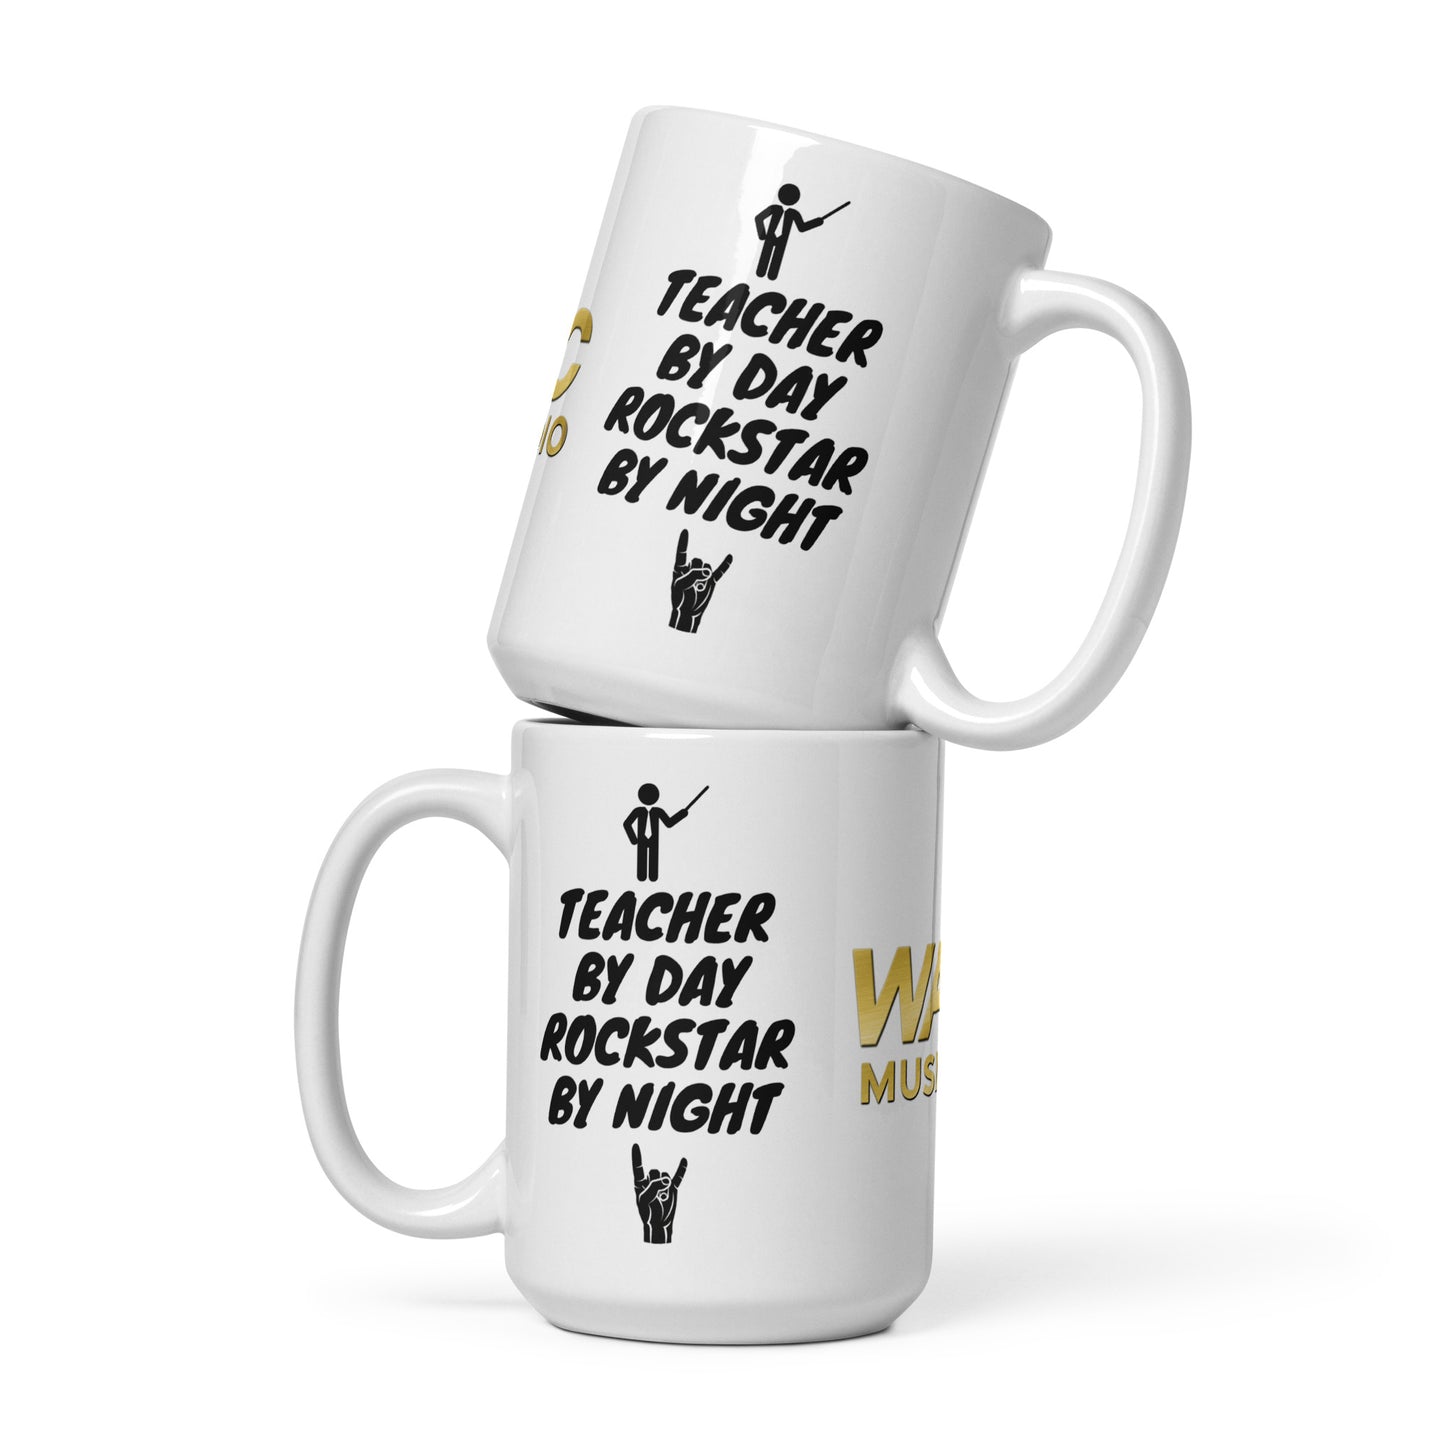 Vinnie Rockstar glossy mug